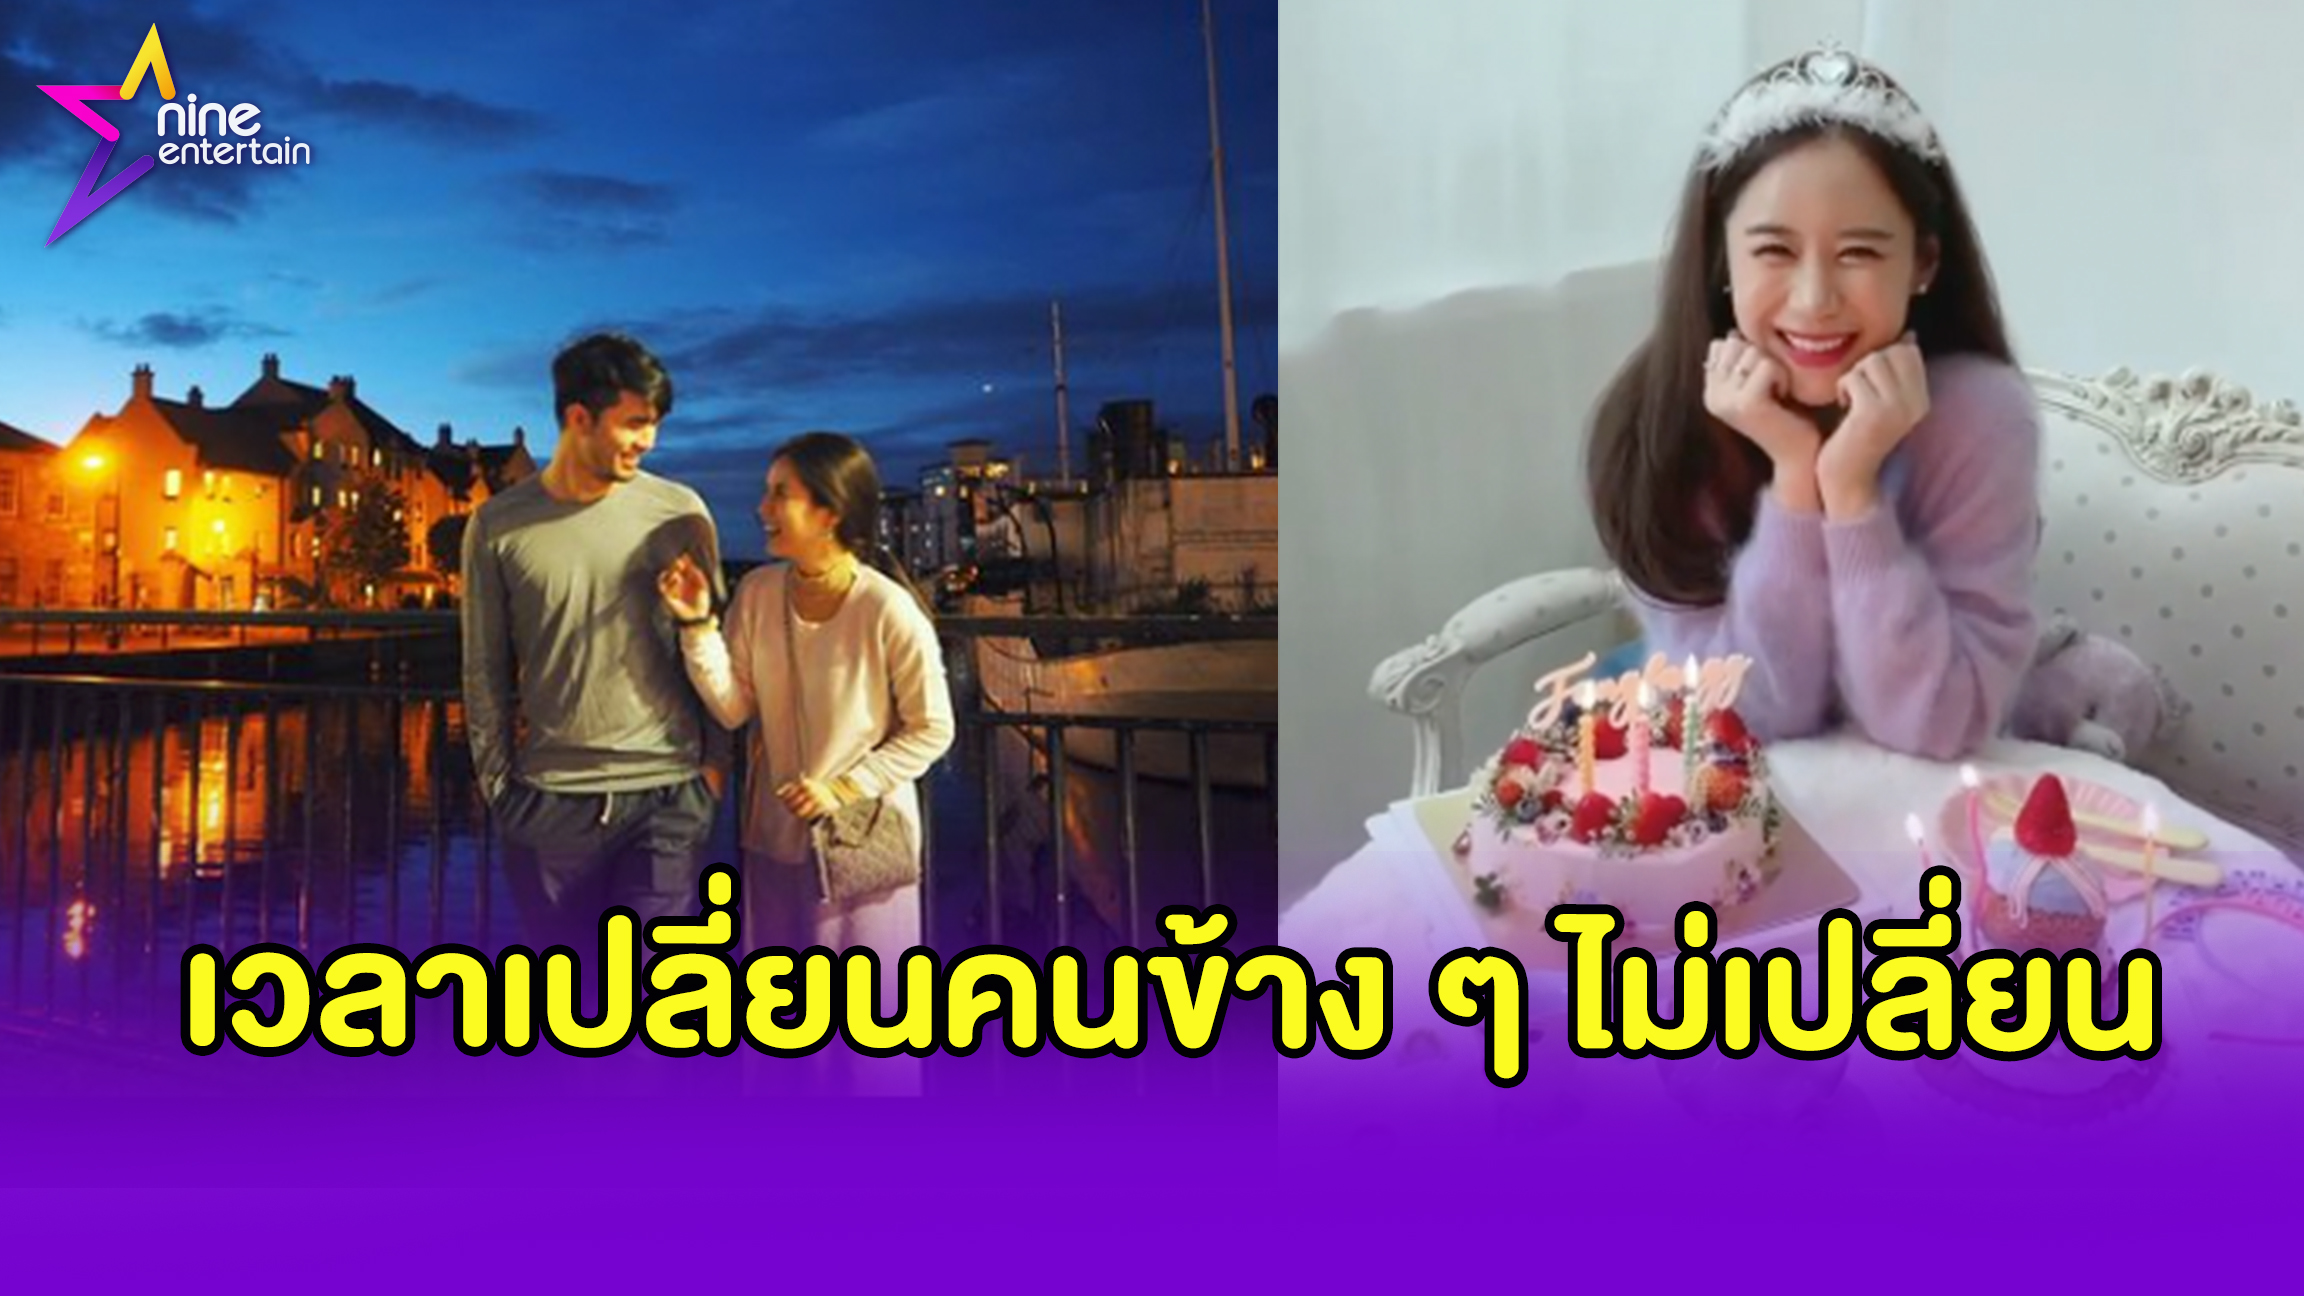 ว่าน” อวยพรหวาน “ฟาง” จนแฟนคลับเชียร์ให้มีข่าวดี - Nineentertain  ข่าวบันเทิงอันดับ 1 ของไทย